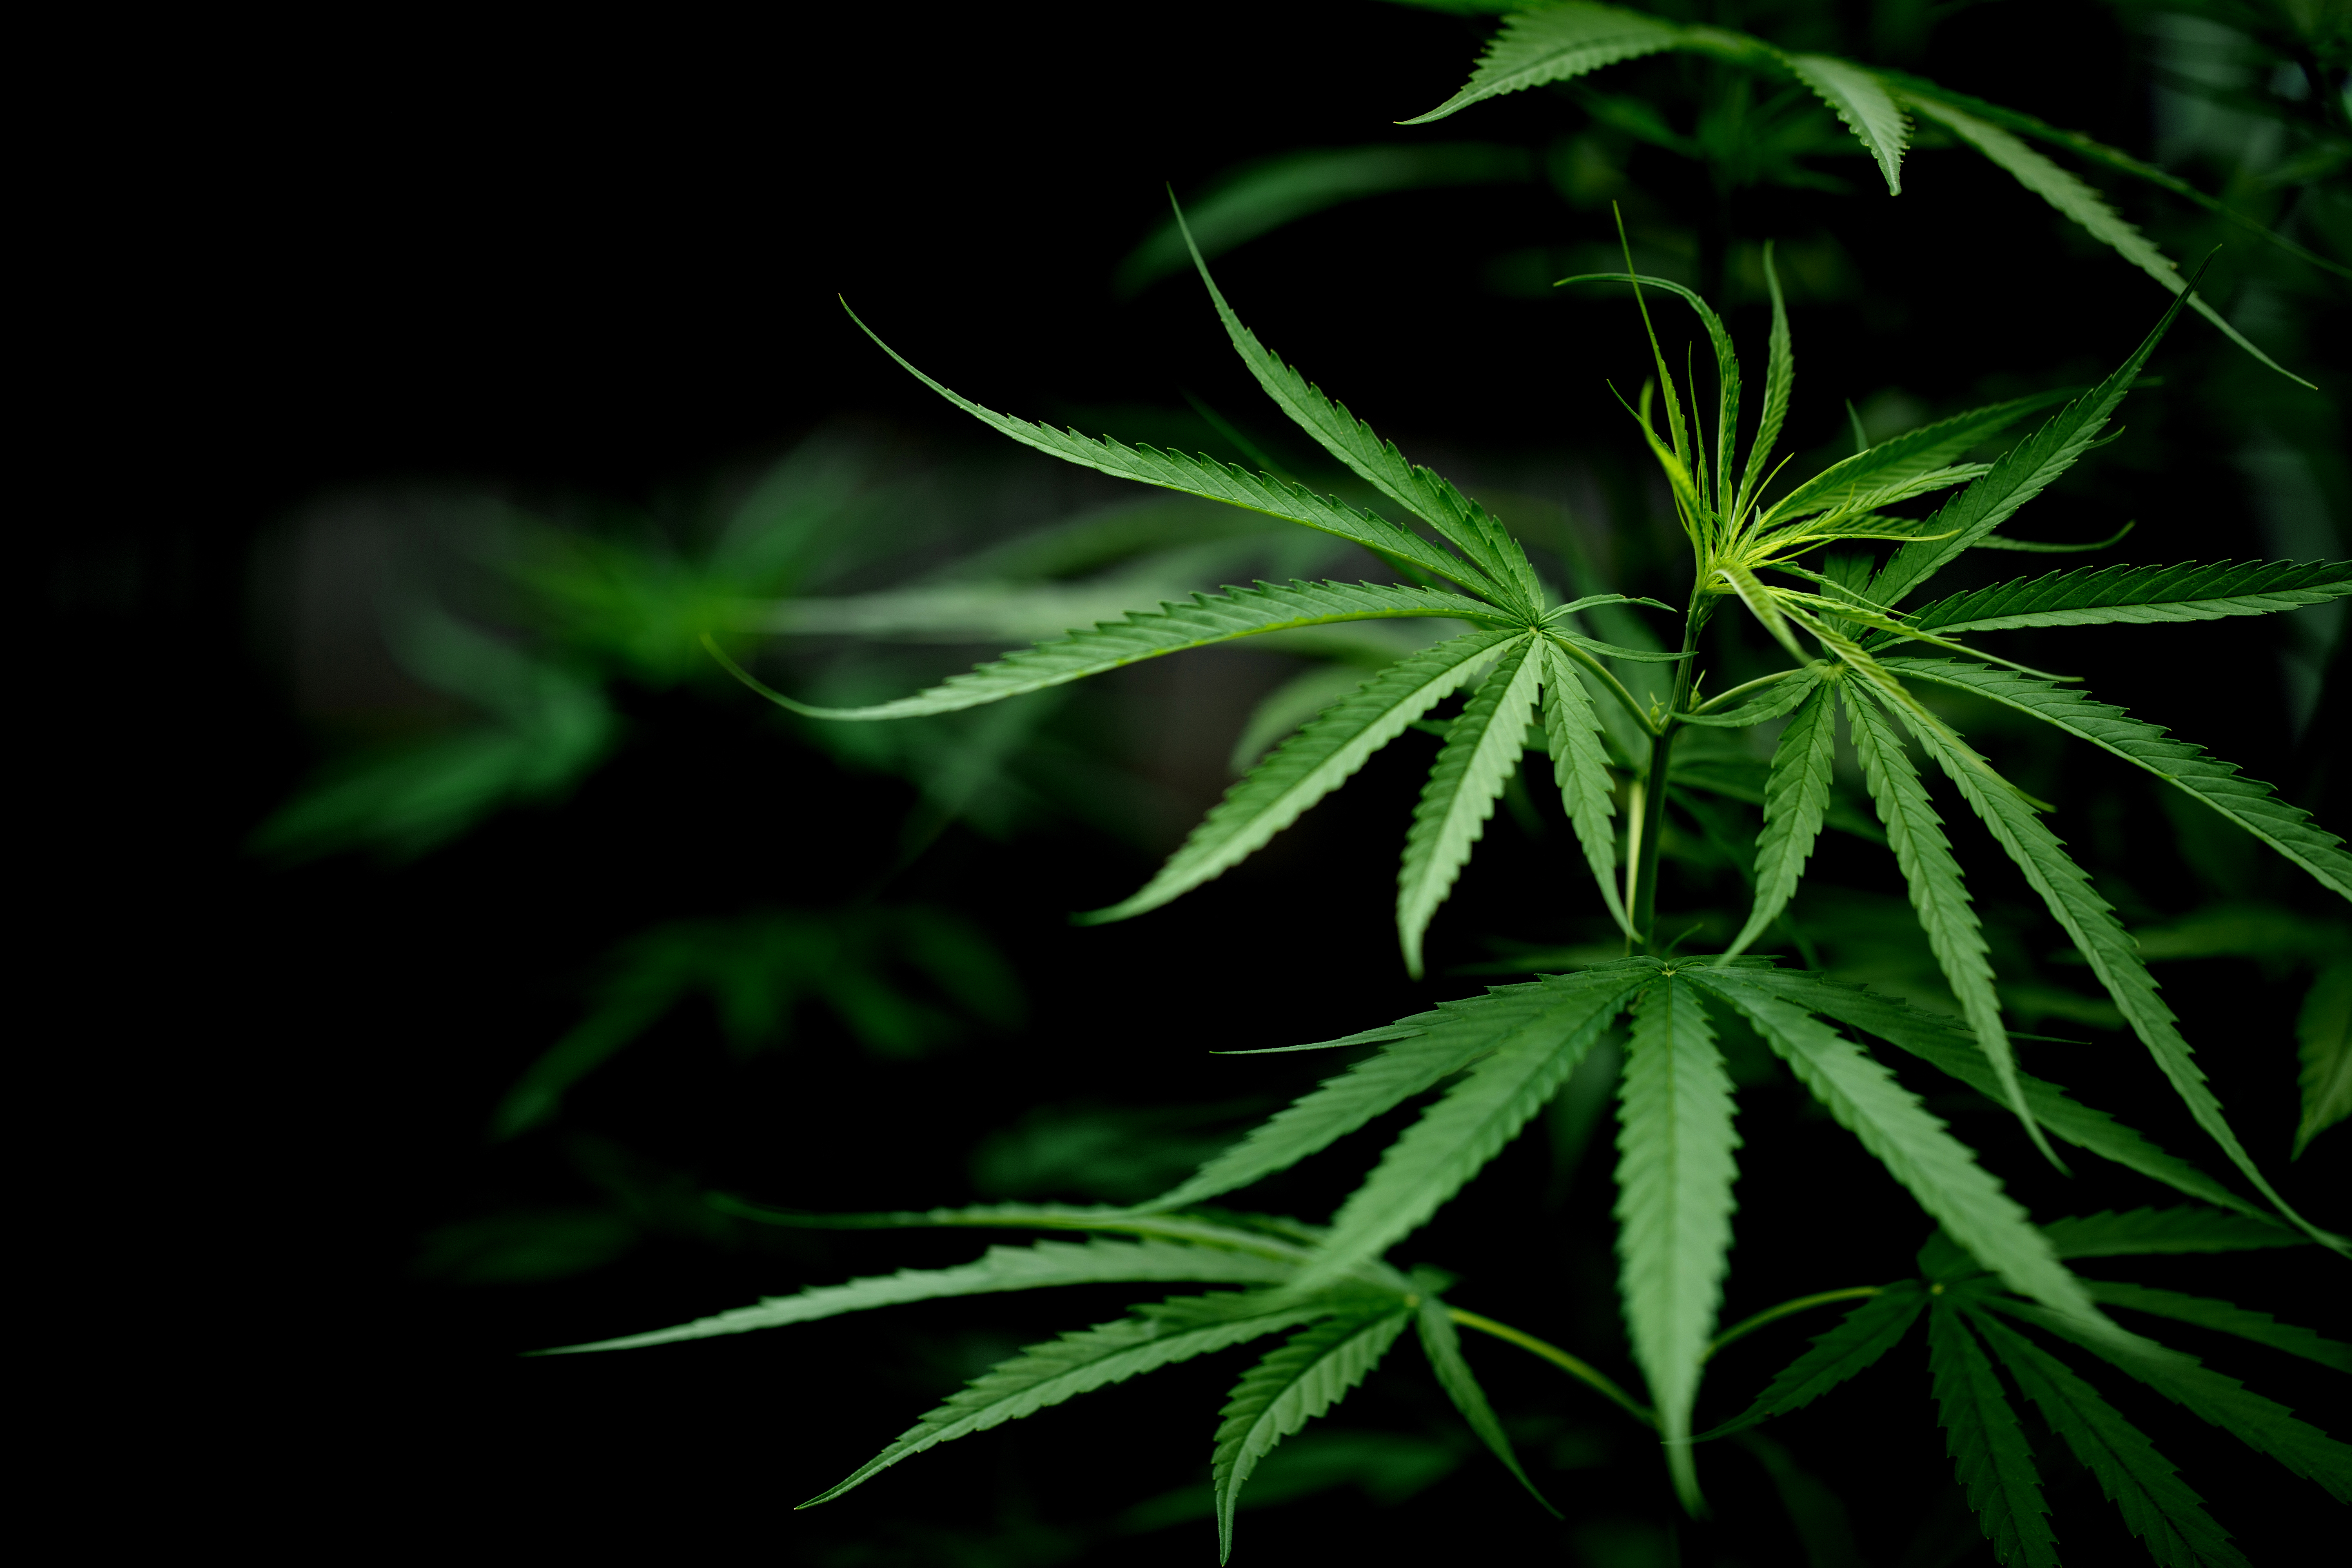 La pianta di cannabis è affascinante sotto moltissimi punti di vista, non da ultimo quello della sua particolare anatomia, non univoca, ma estremamente diversificata anche solo a seconda del sesso della pianta stessa, nonché delle specie.